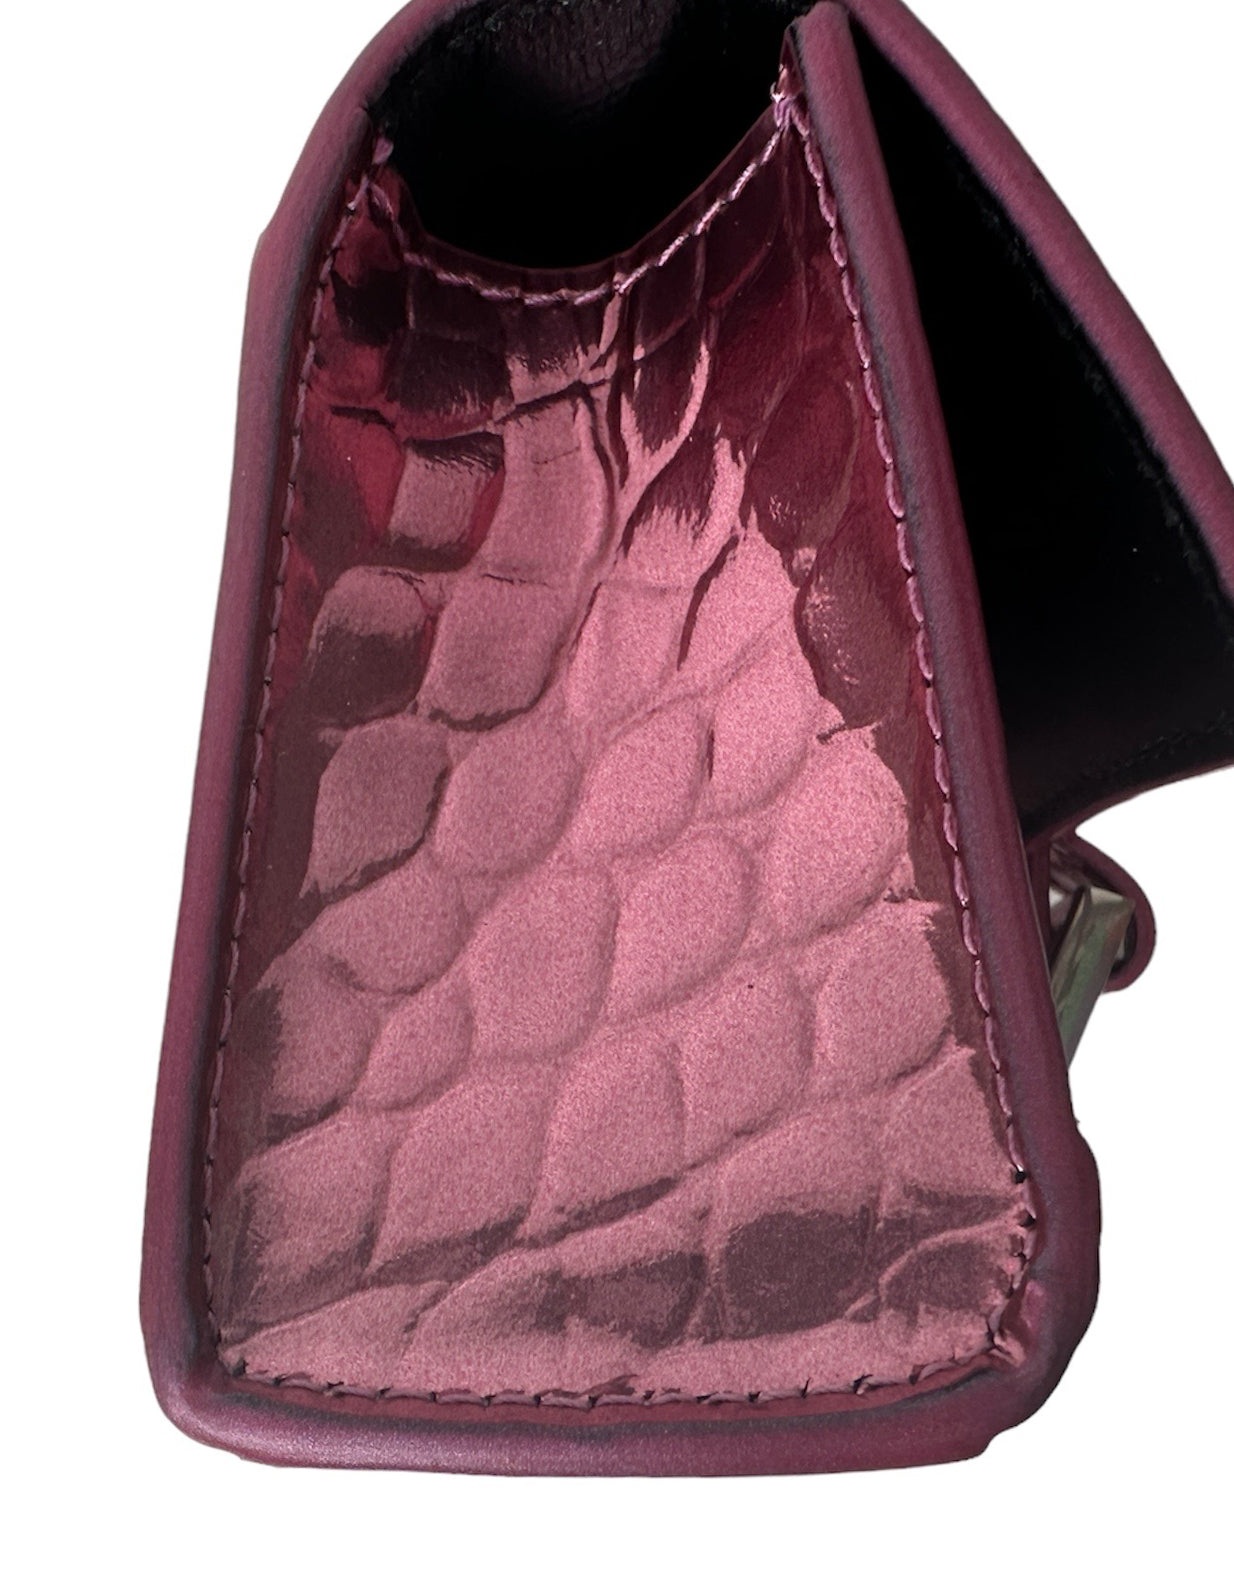 Balenciaga Metallic Pink Embossed Crocodile Hourglass Mini Top Handle Bag